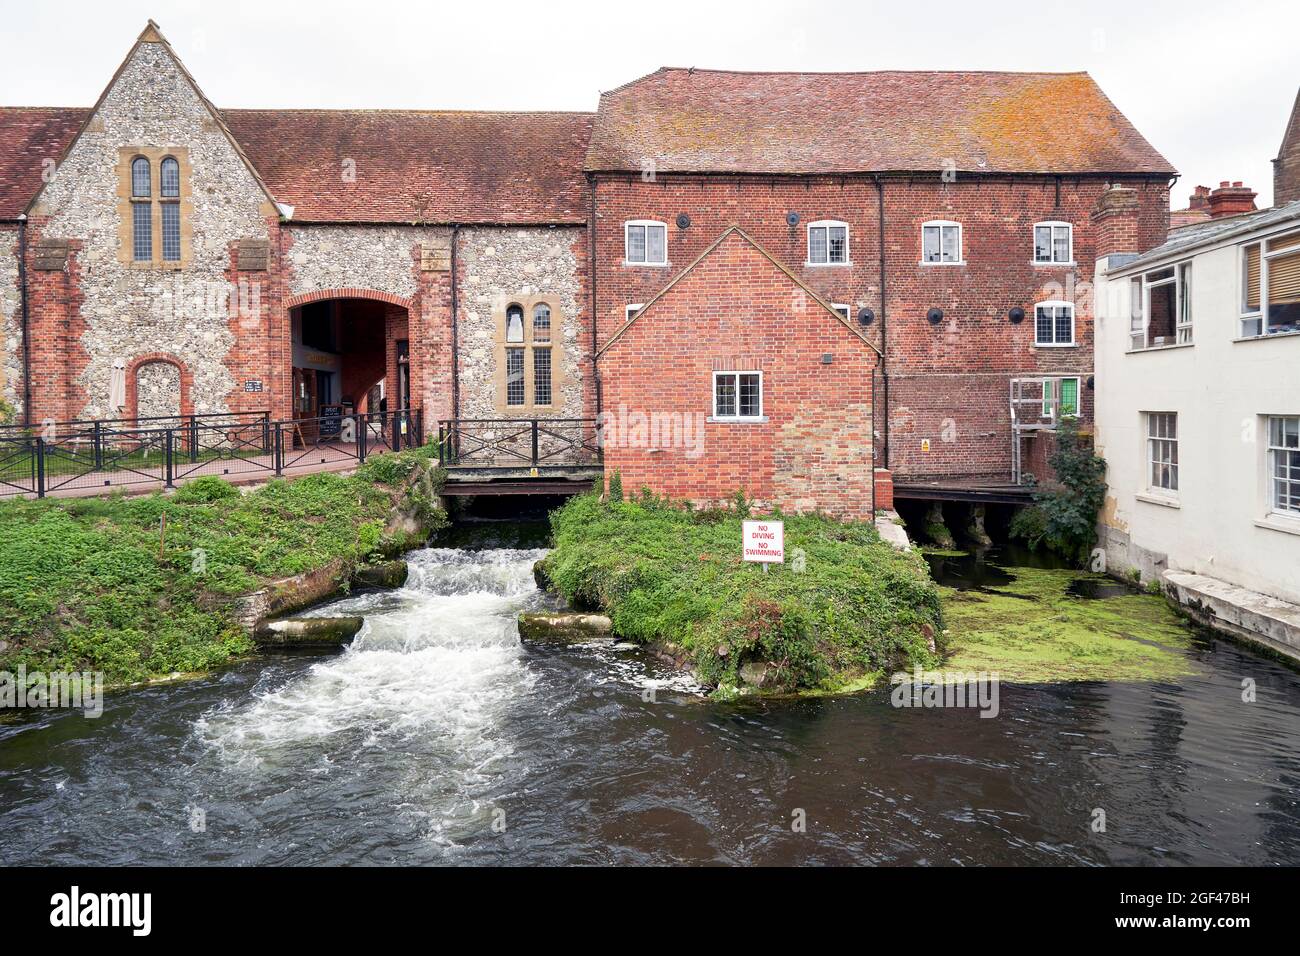 Antiguo molino en Salisbury Reino Unido construido de ladrillo rojo y una sección más antigua de piedra con el río Avon que fluye por debajo de él Foto de stock